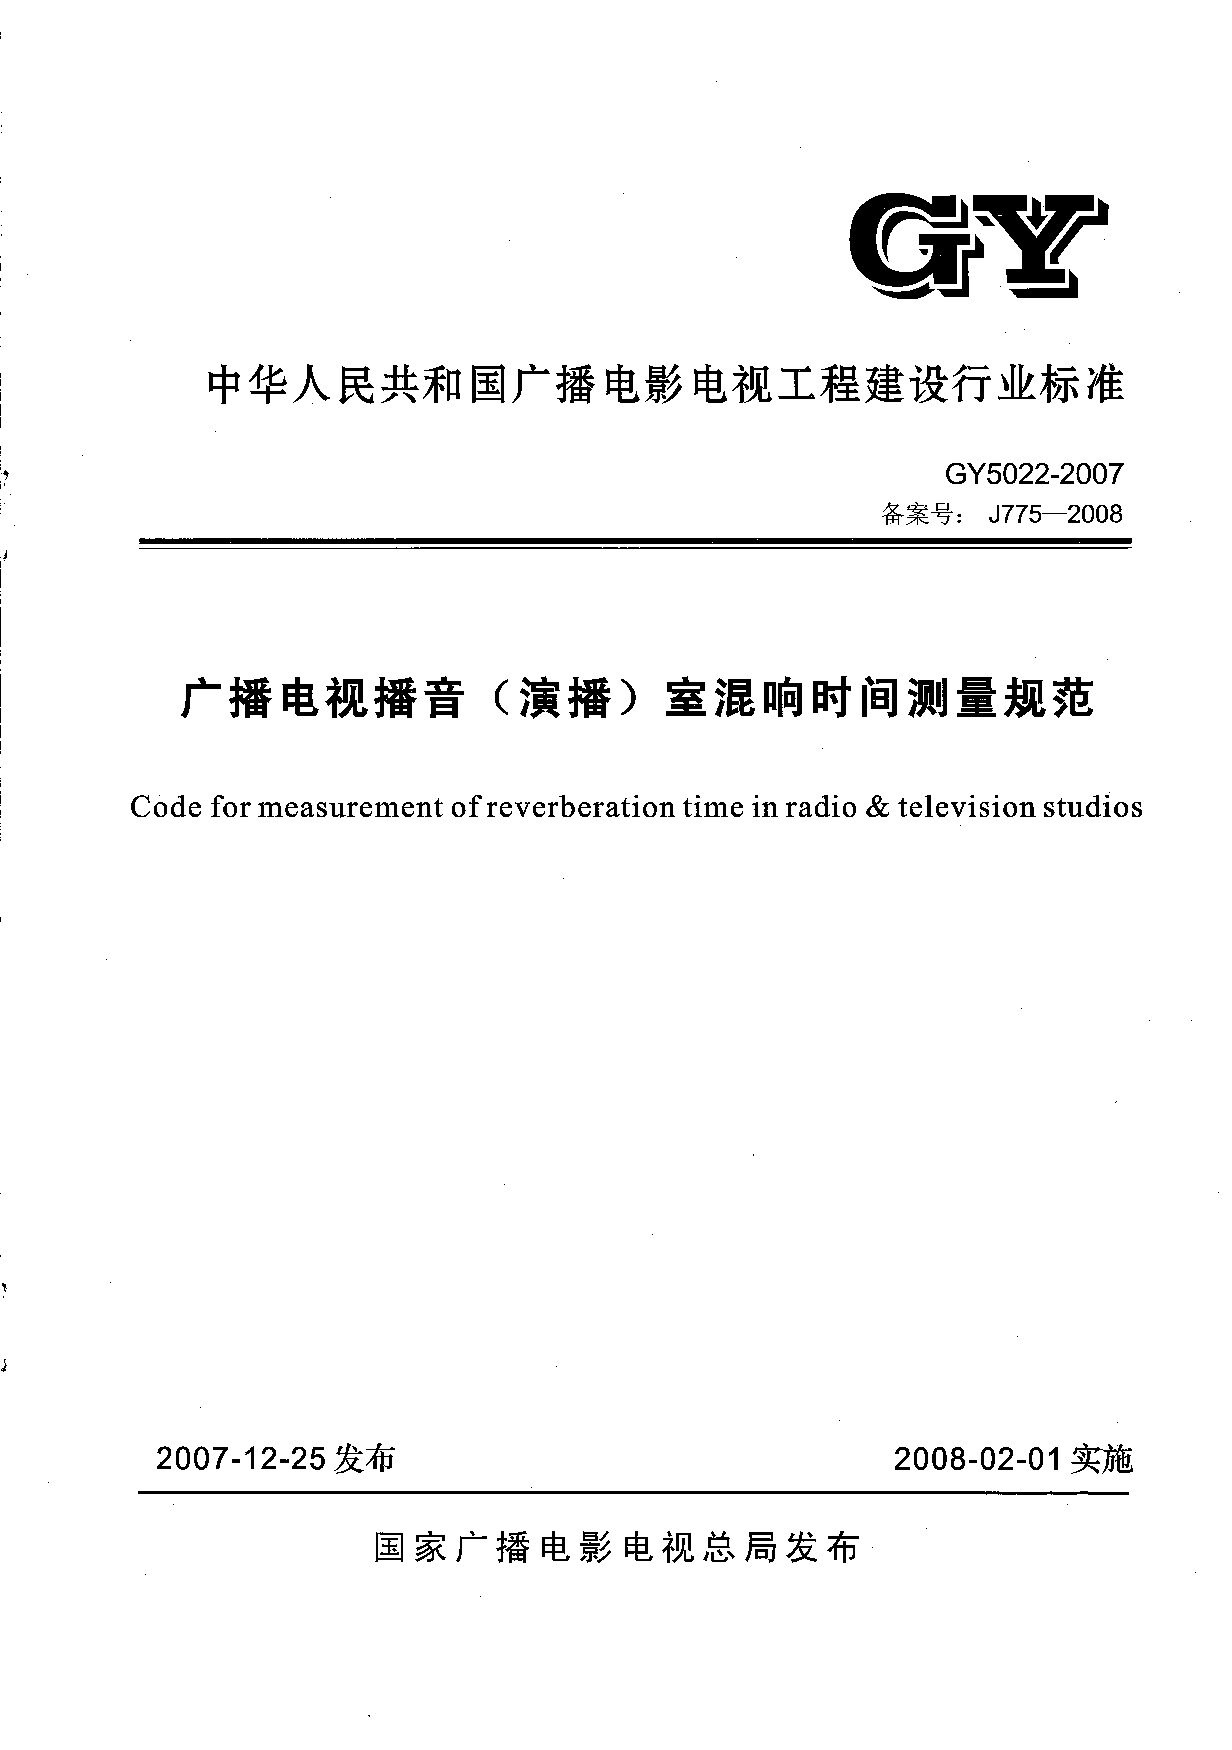 GY 5022-2007封面图